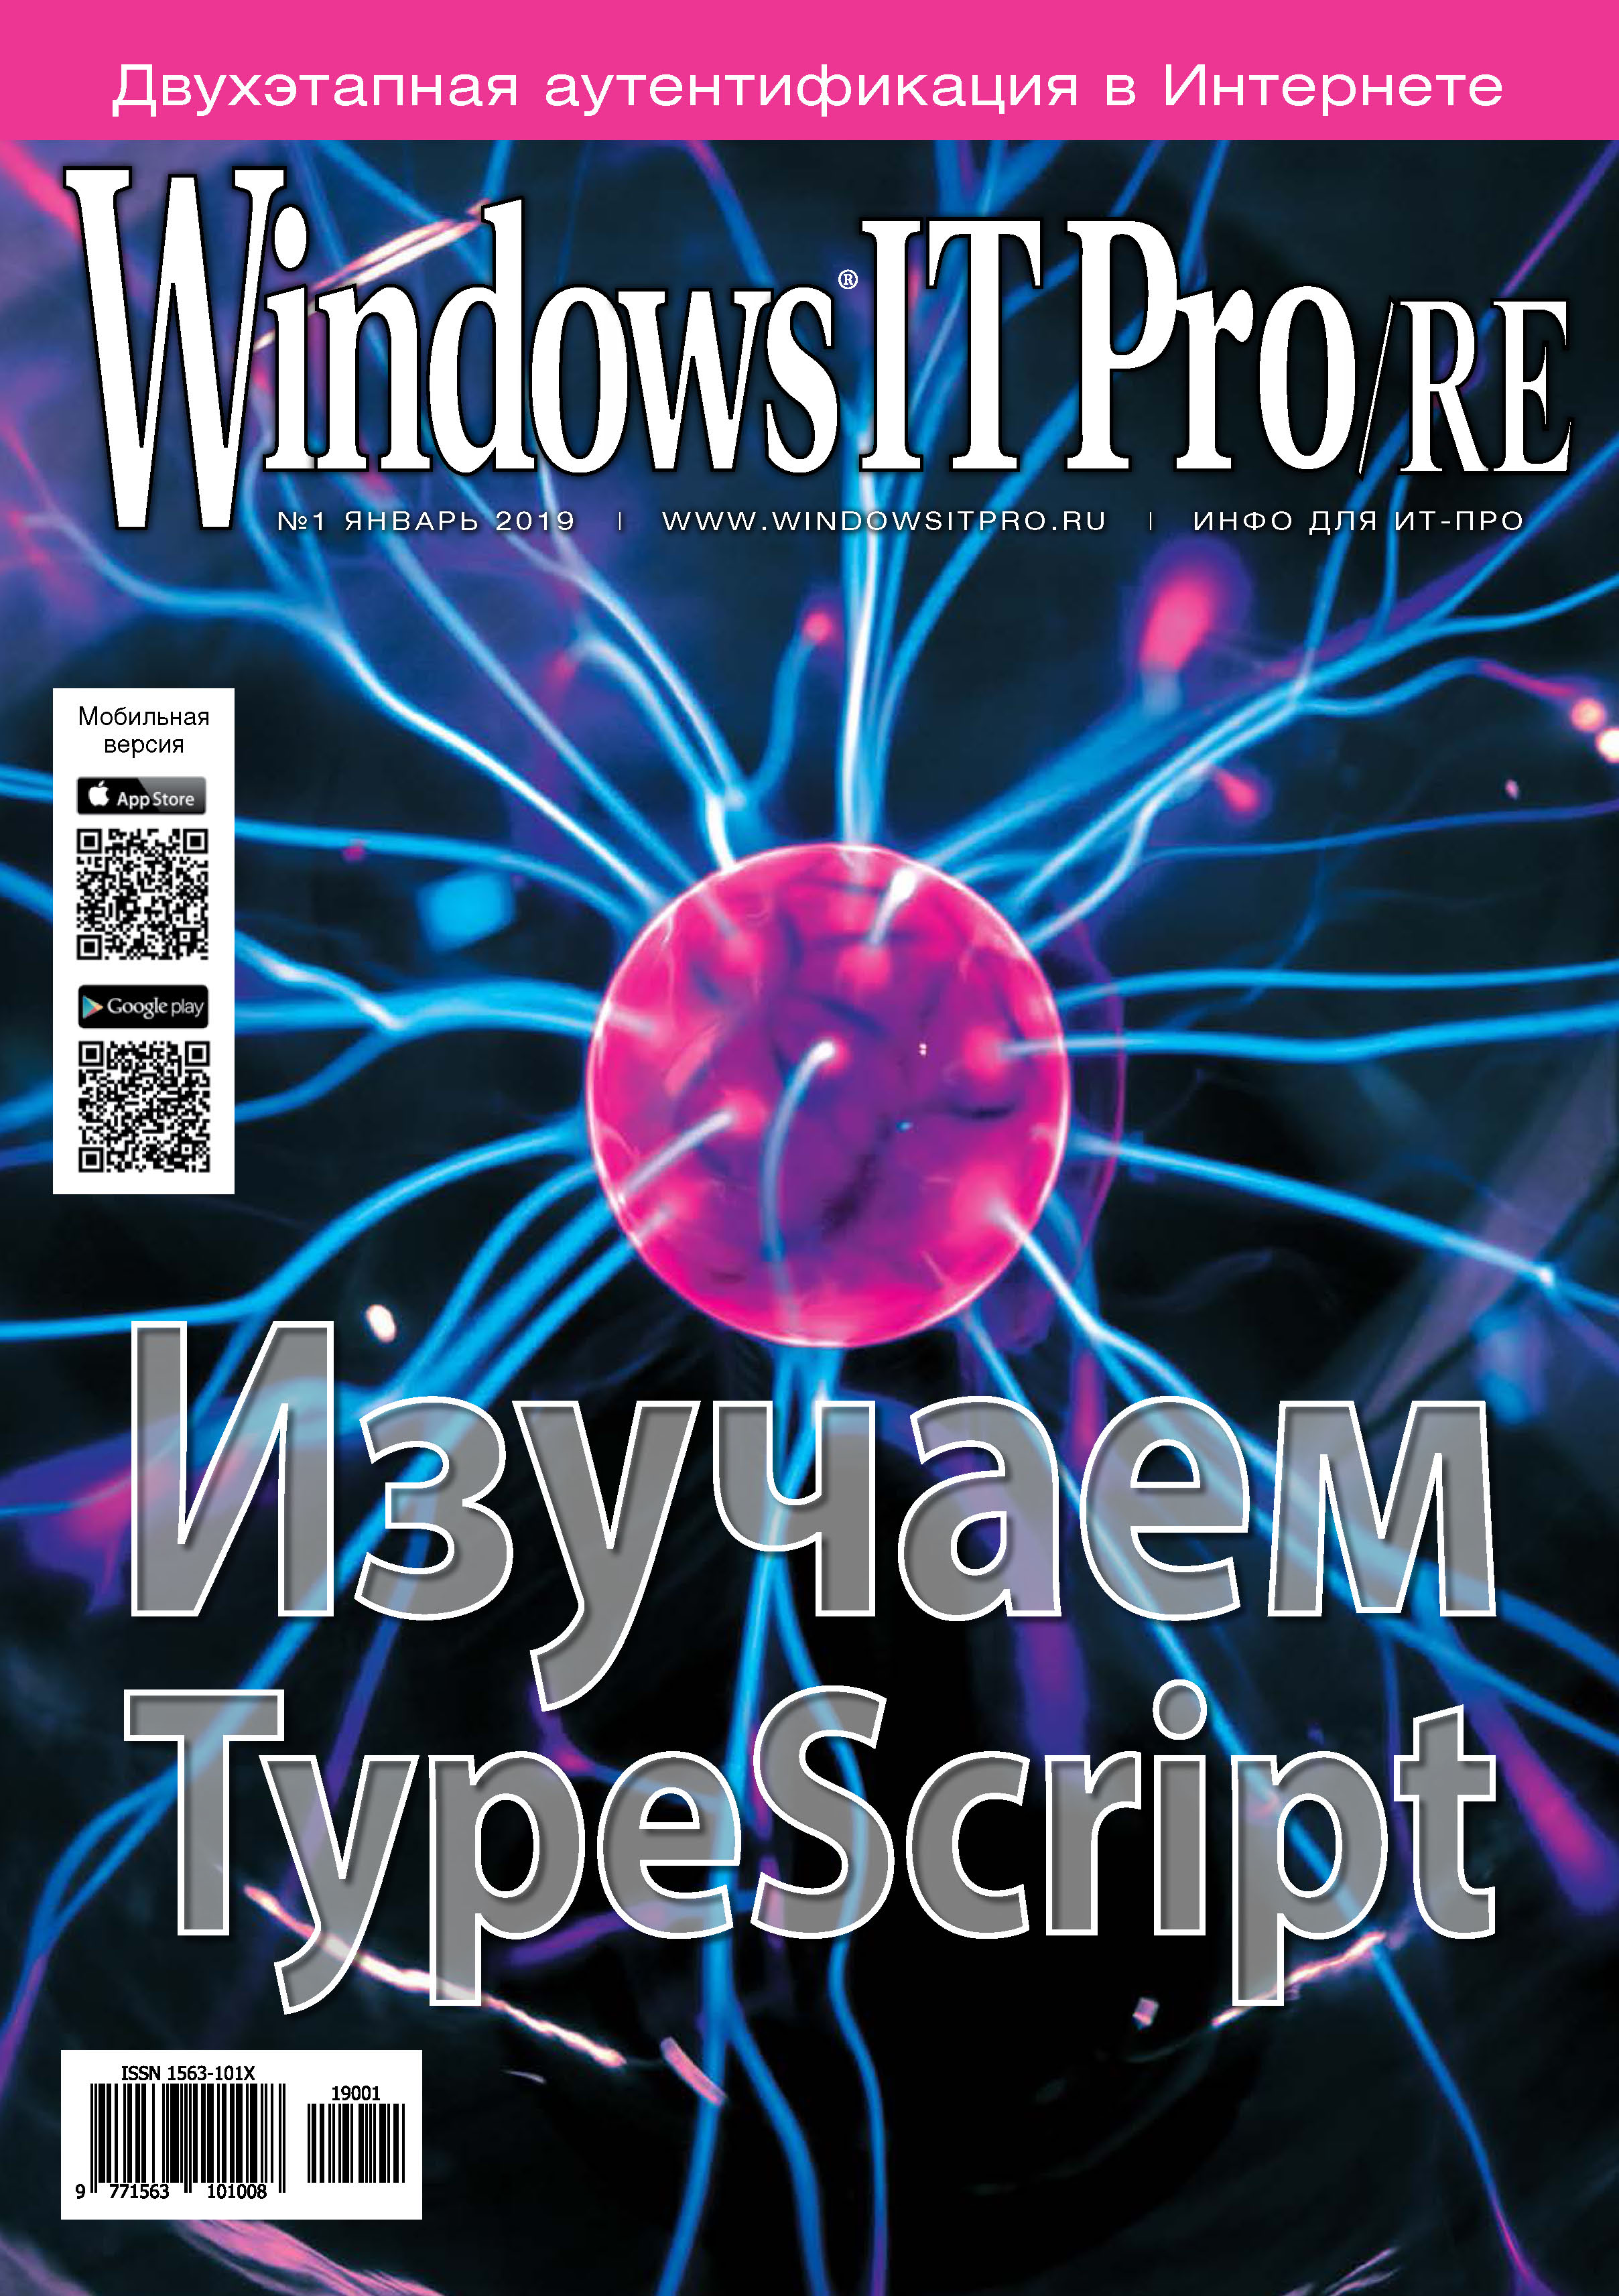 Windows IT Pro/RE№01/2019